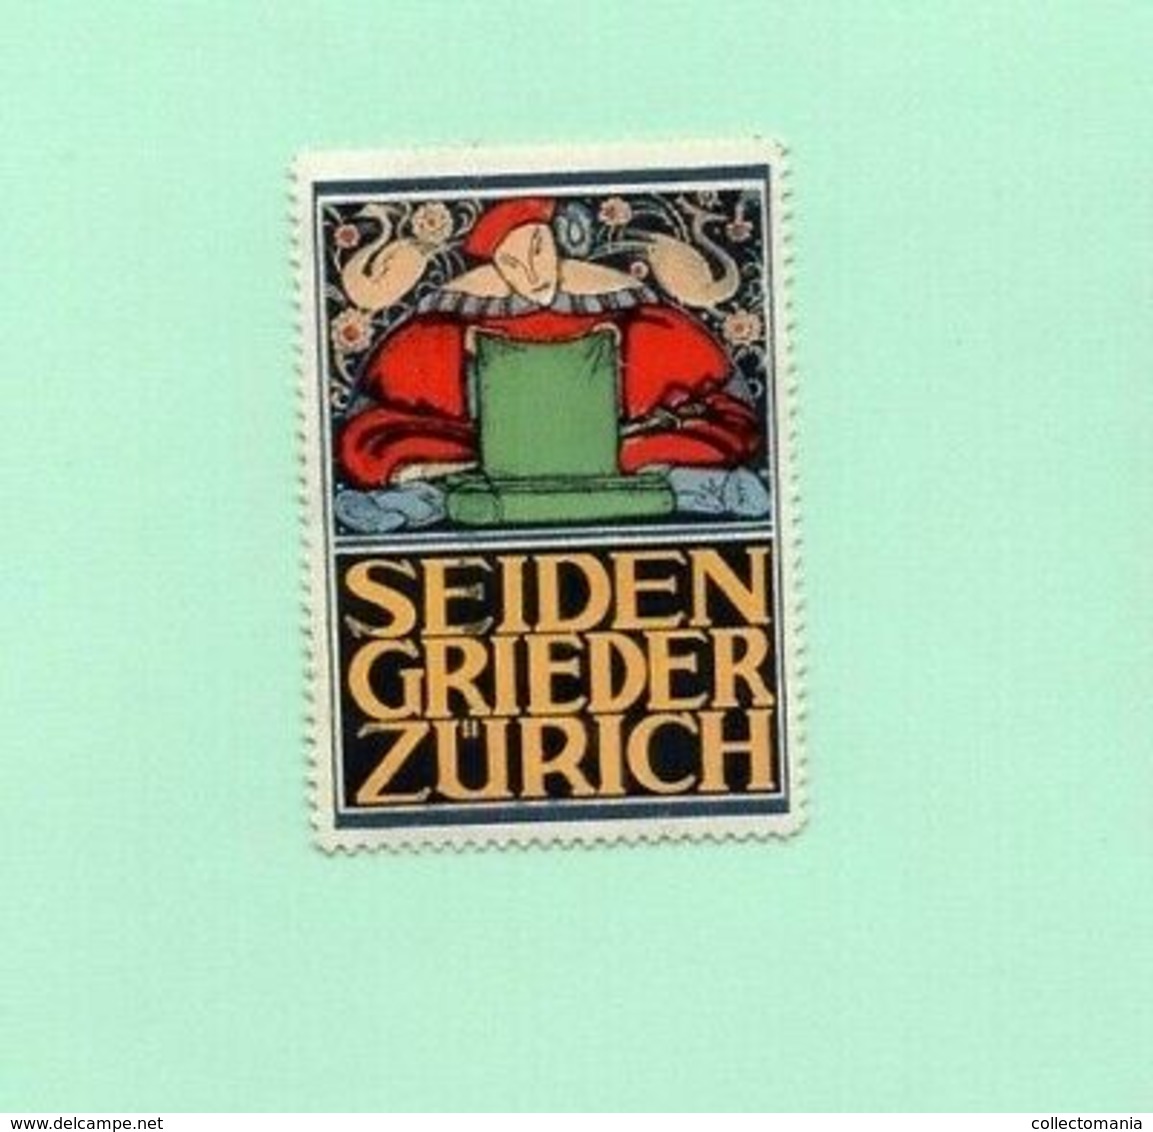 6 Poster Stamps Suisse Switserland Zürich Pflegerinnen Schüle Seiden Spinner Theater 1914 Tuberculose  ZURICH Marken - Hydrotherapy